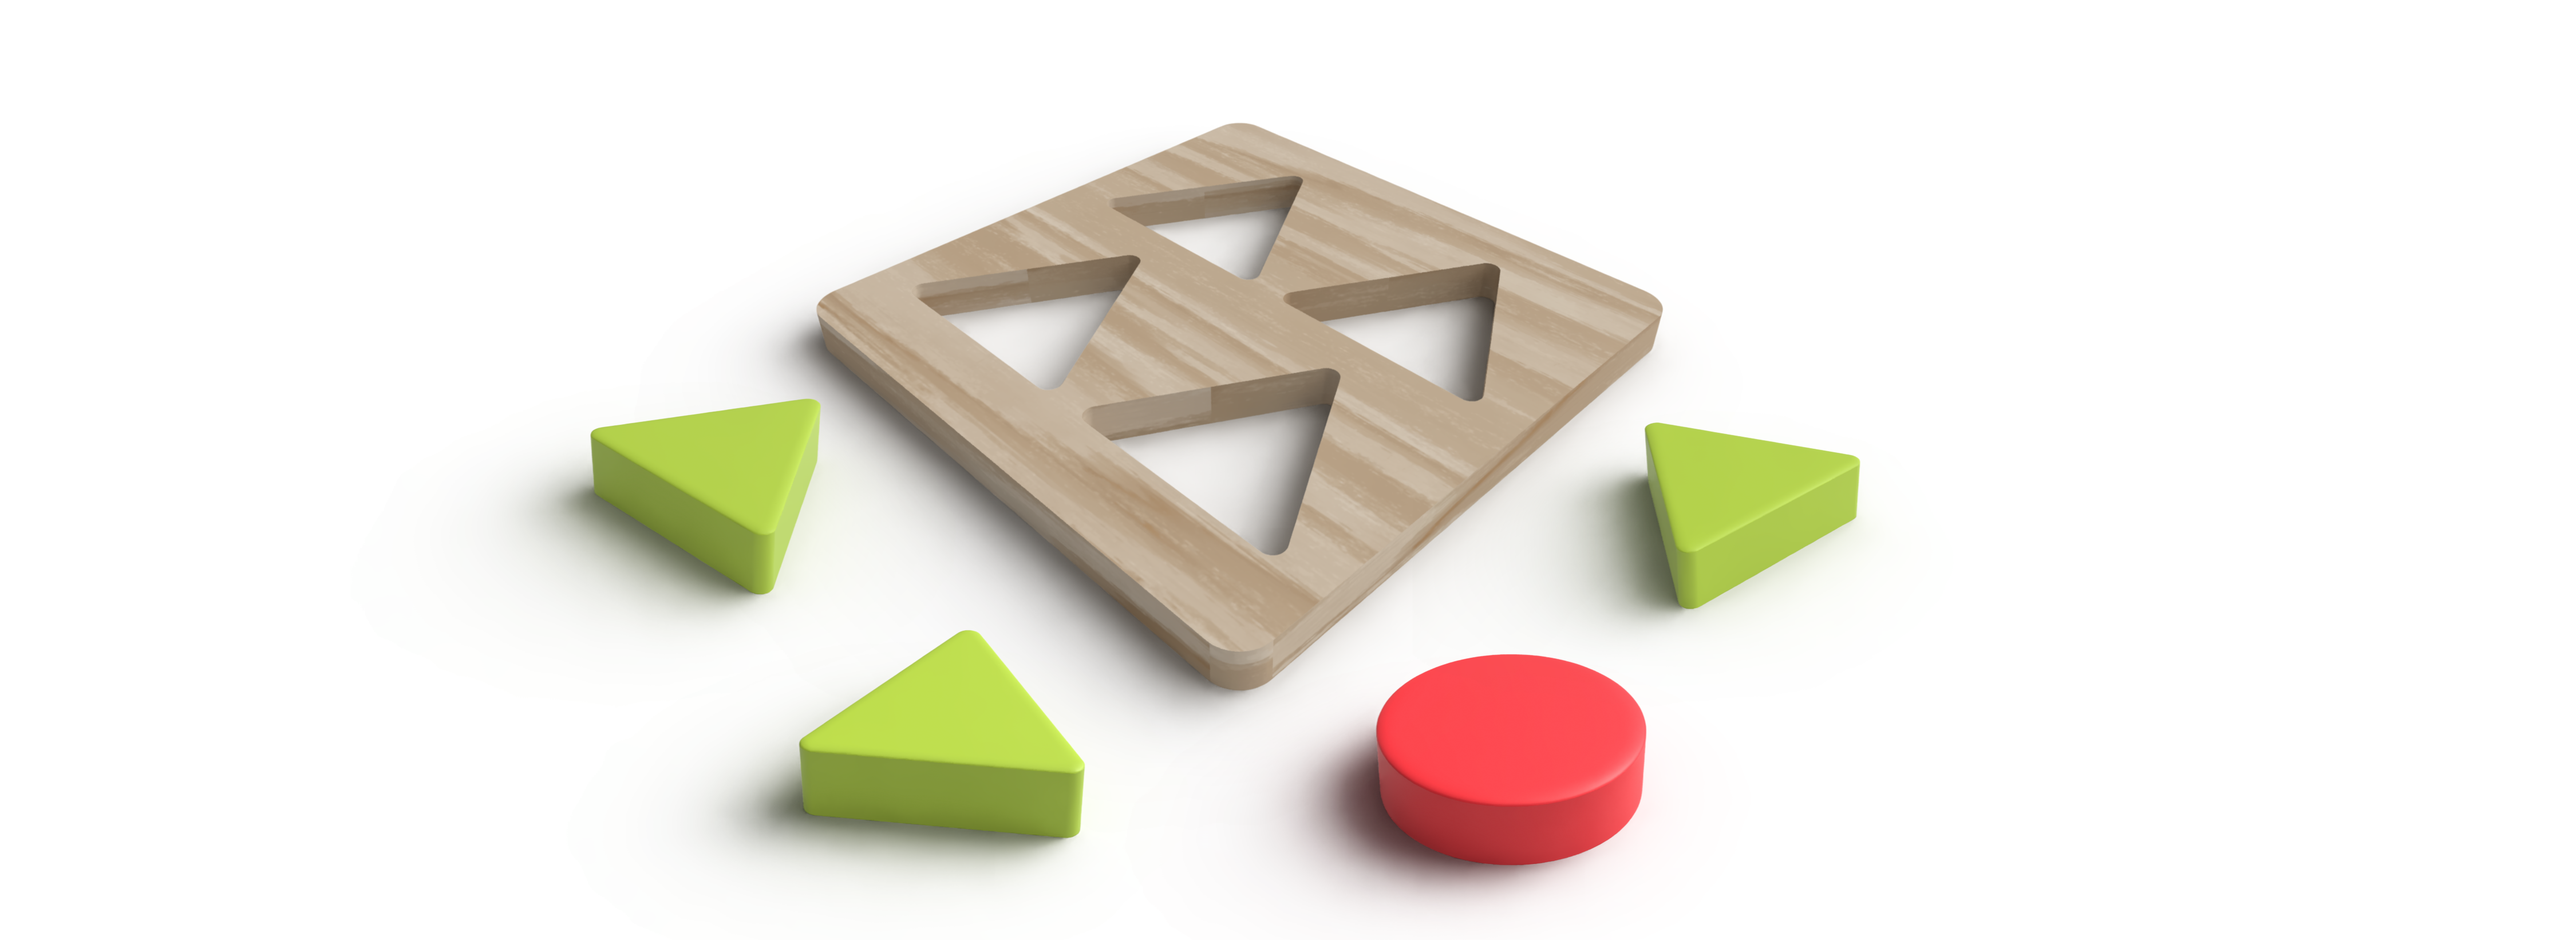 Eine Holzplatte aus dem 4 Dreiecke ausgesägt wurden. Um diese Platte liegen 3 grüne Dreiecke in derselben Größe wie die Löcher und 1 roter Kreis. 